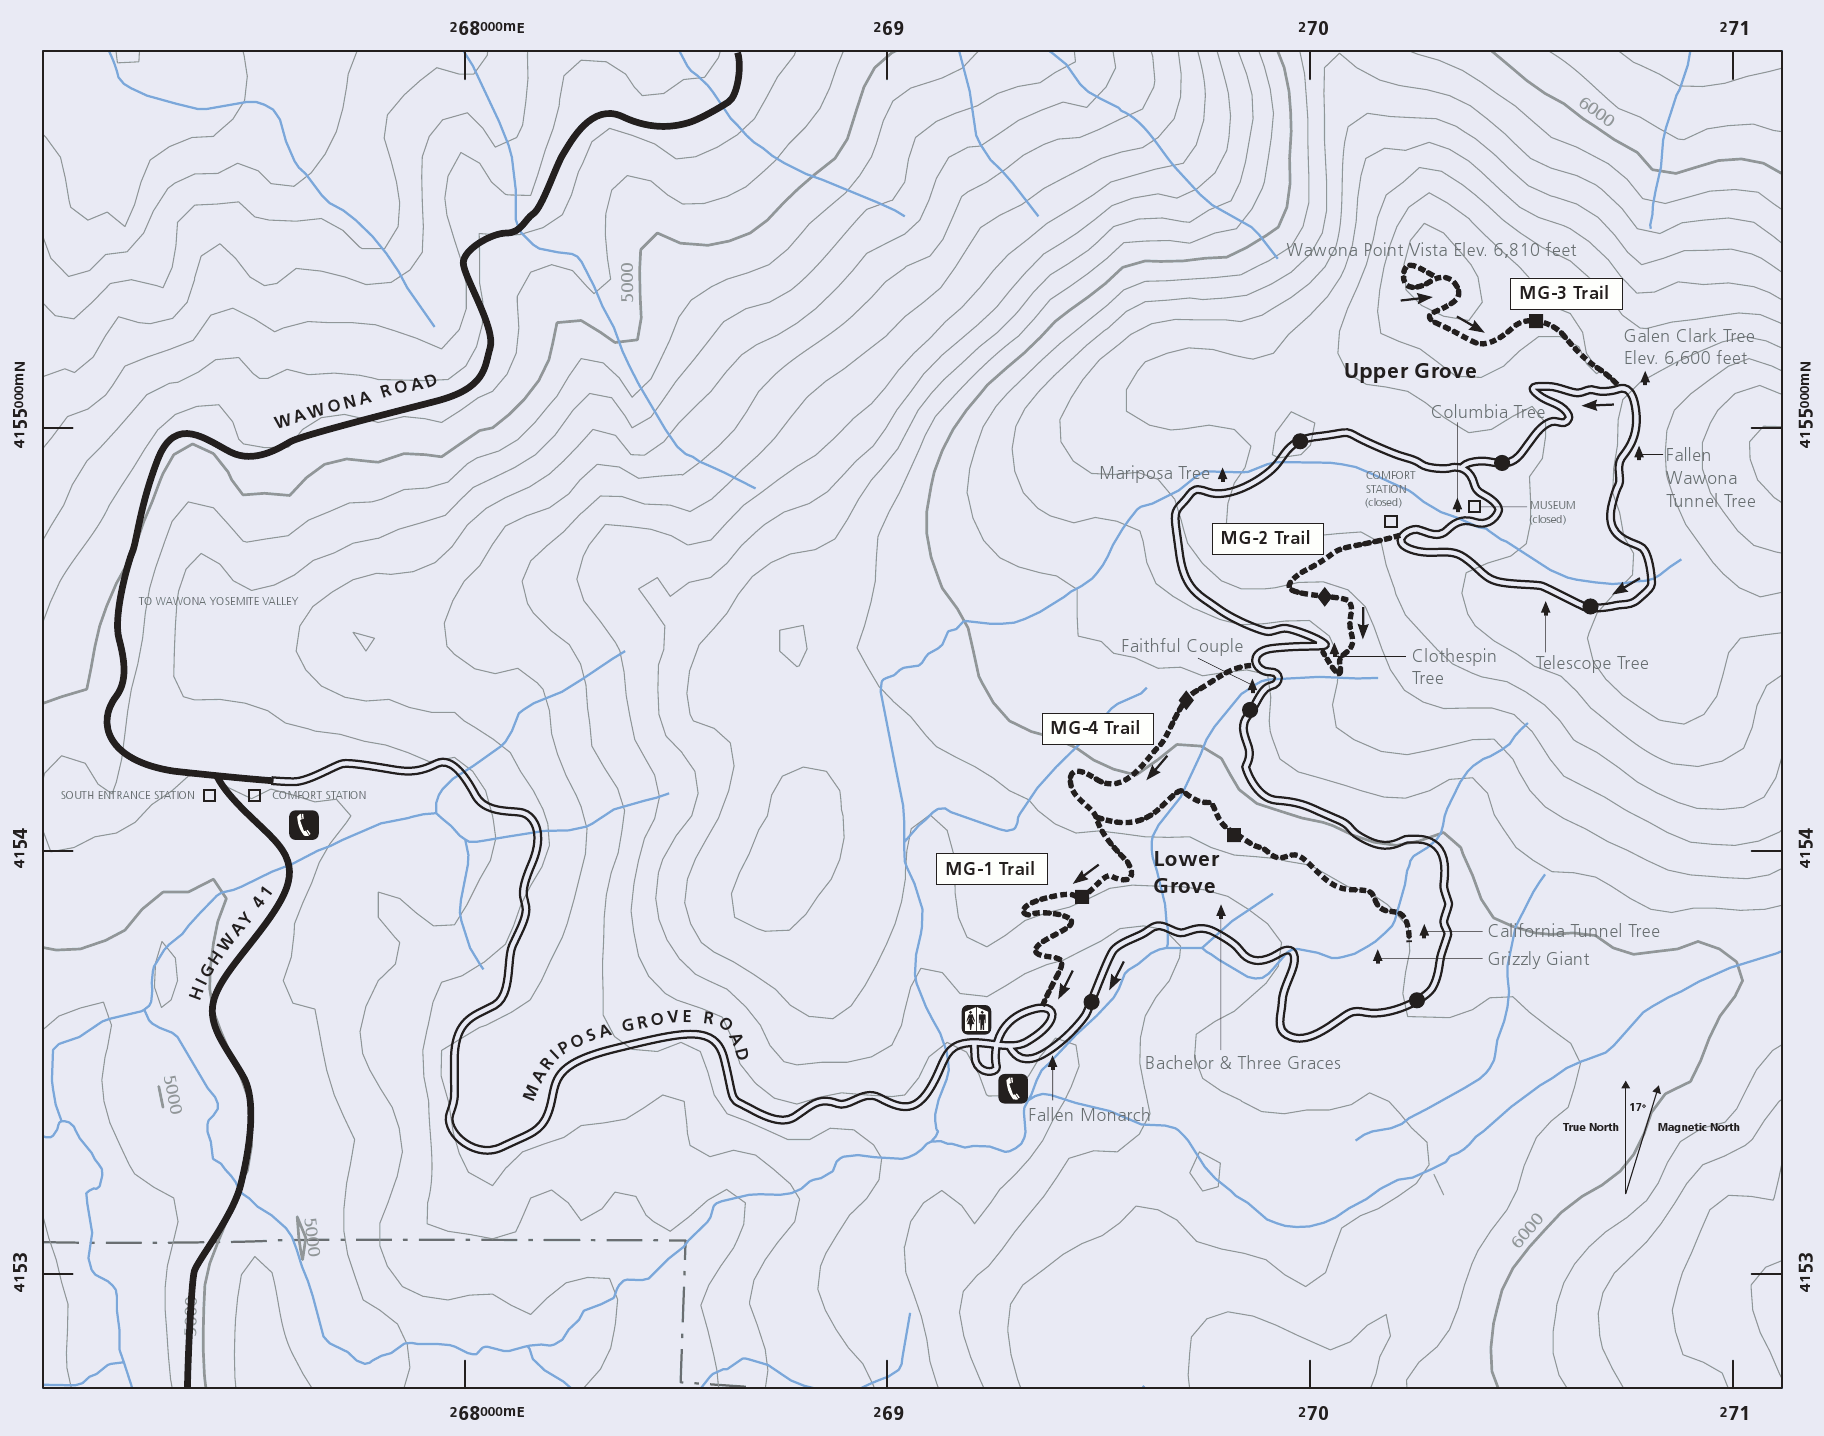 Карта парка Йосемити срисовать. Транскенозерская тропа. Марипоза карта. Mariposa Grove карта где она находится.